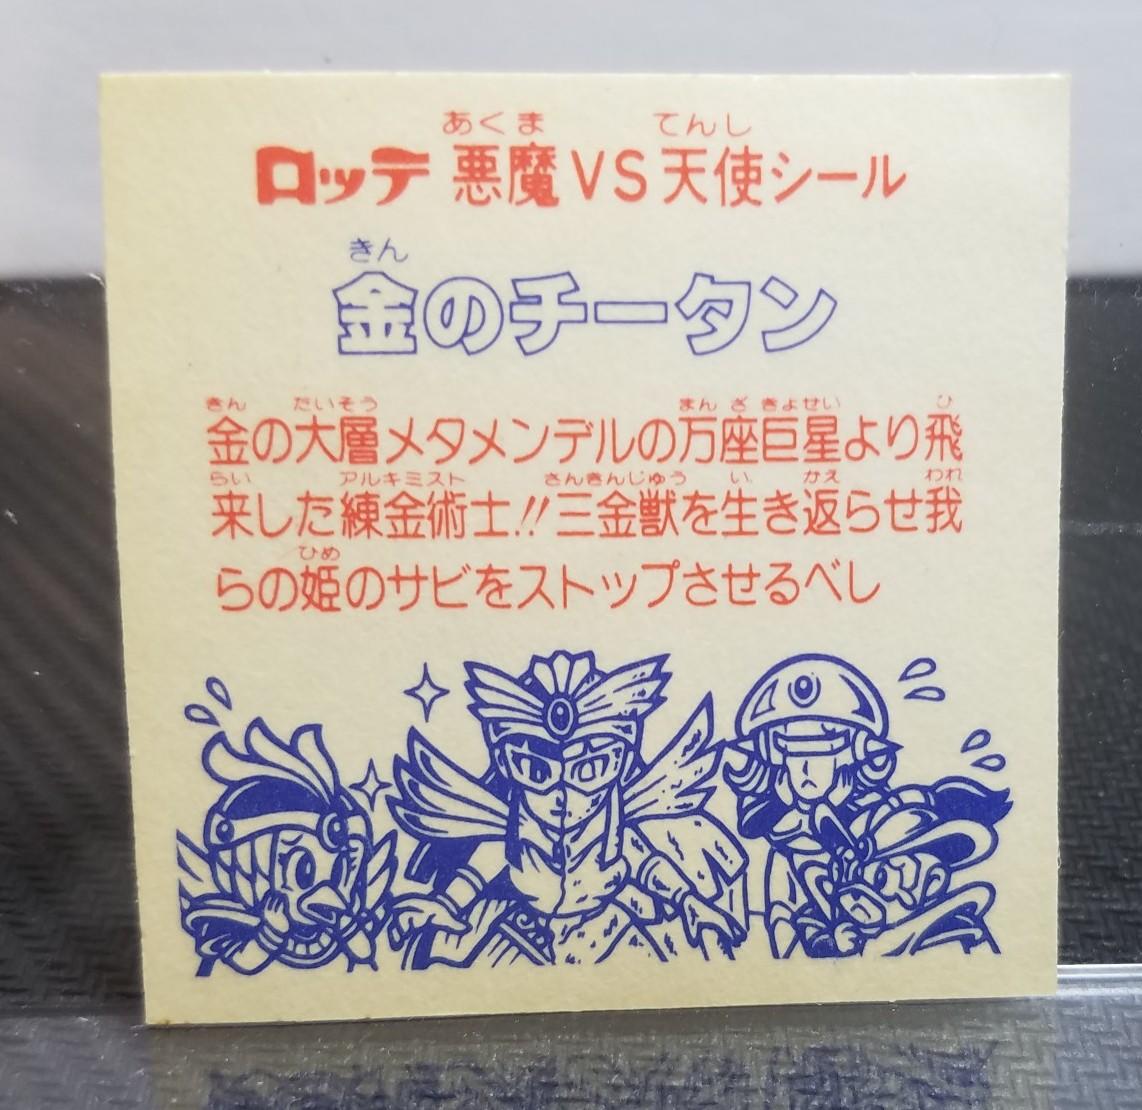 まんだらけ | 渋谷店 カード/シール - カード・シール 8/9(金)販売情報 